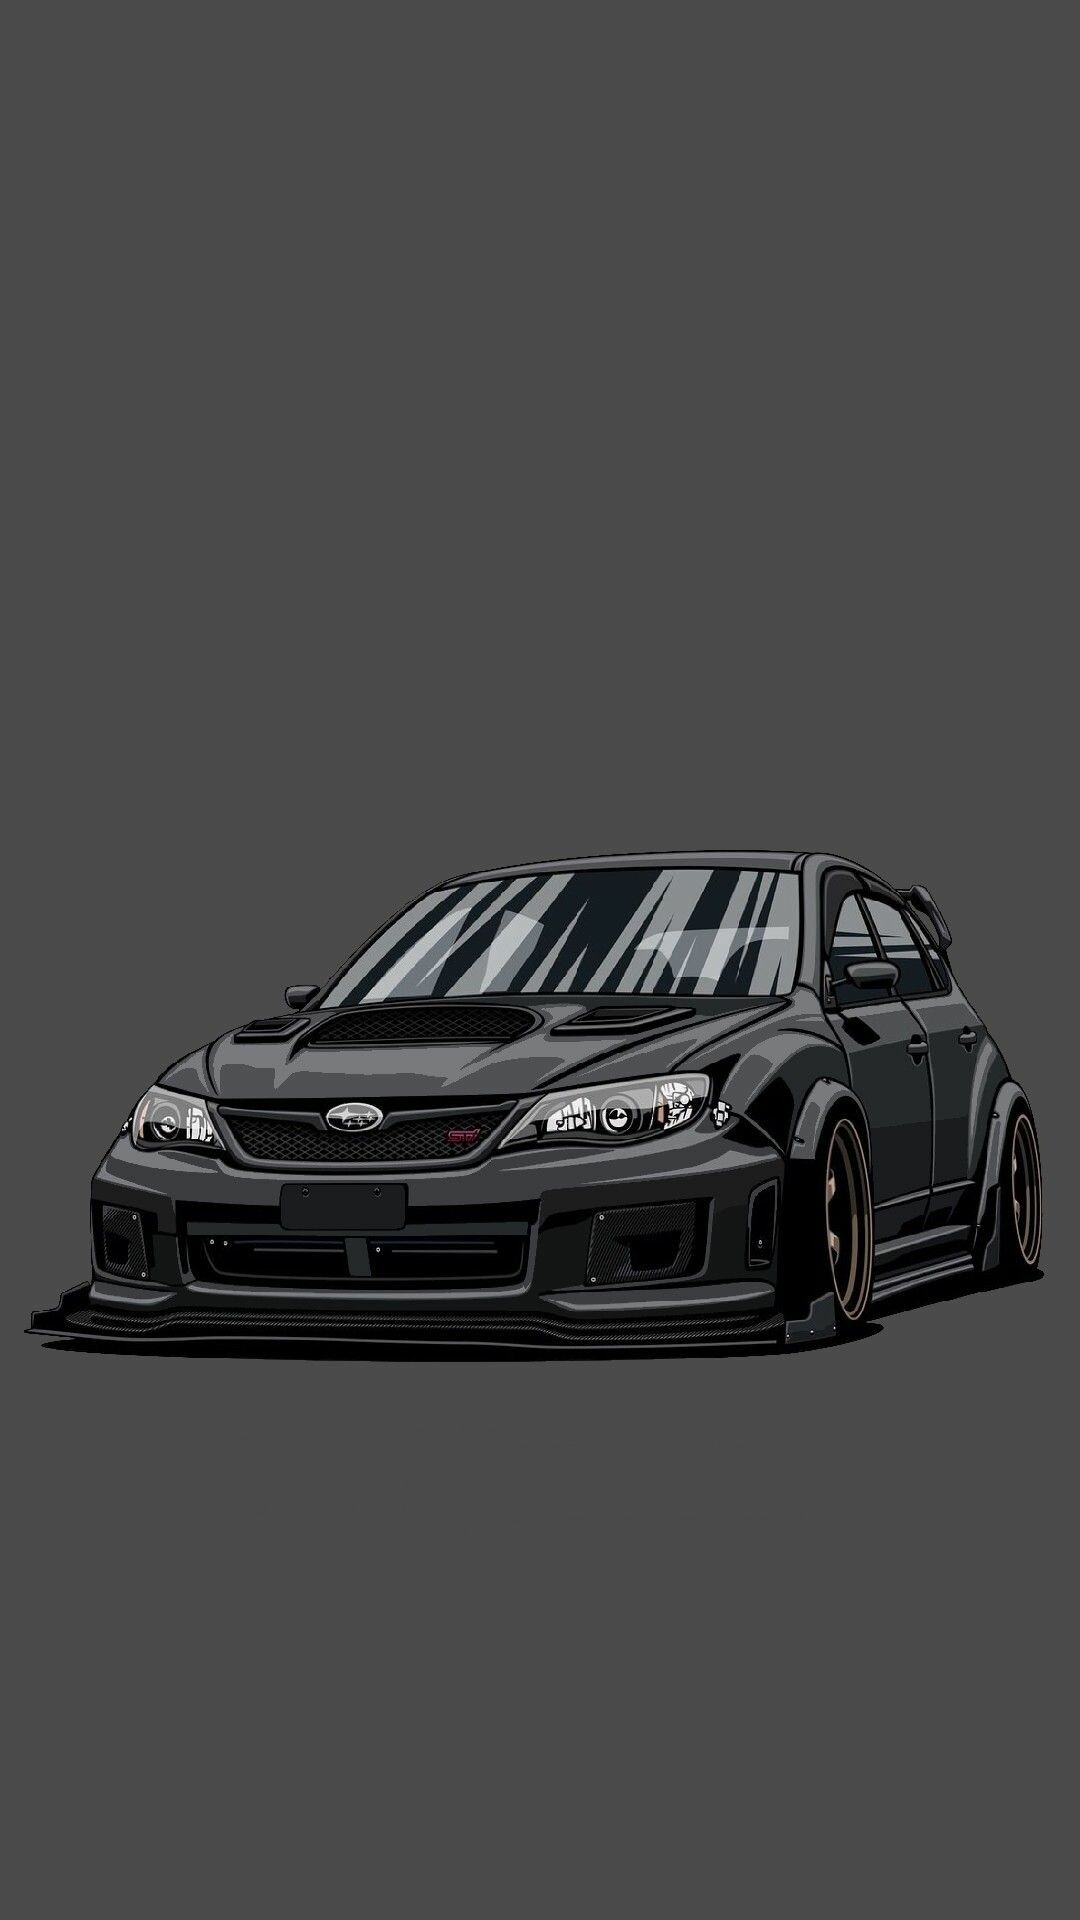 Subaru: Hatchback, WRX, Tuned car, Luxury sports car. 1080x1920 Full HD Background.